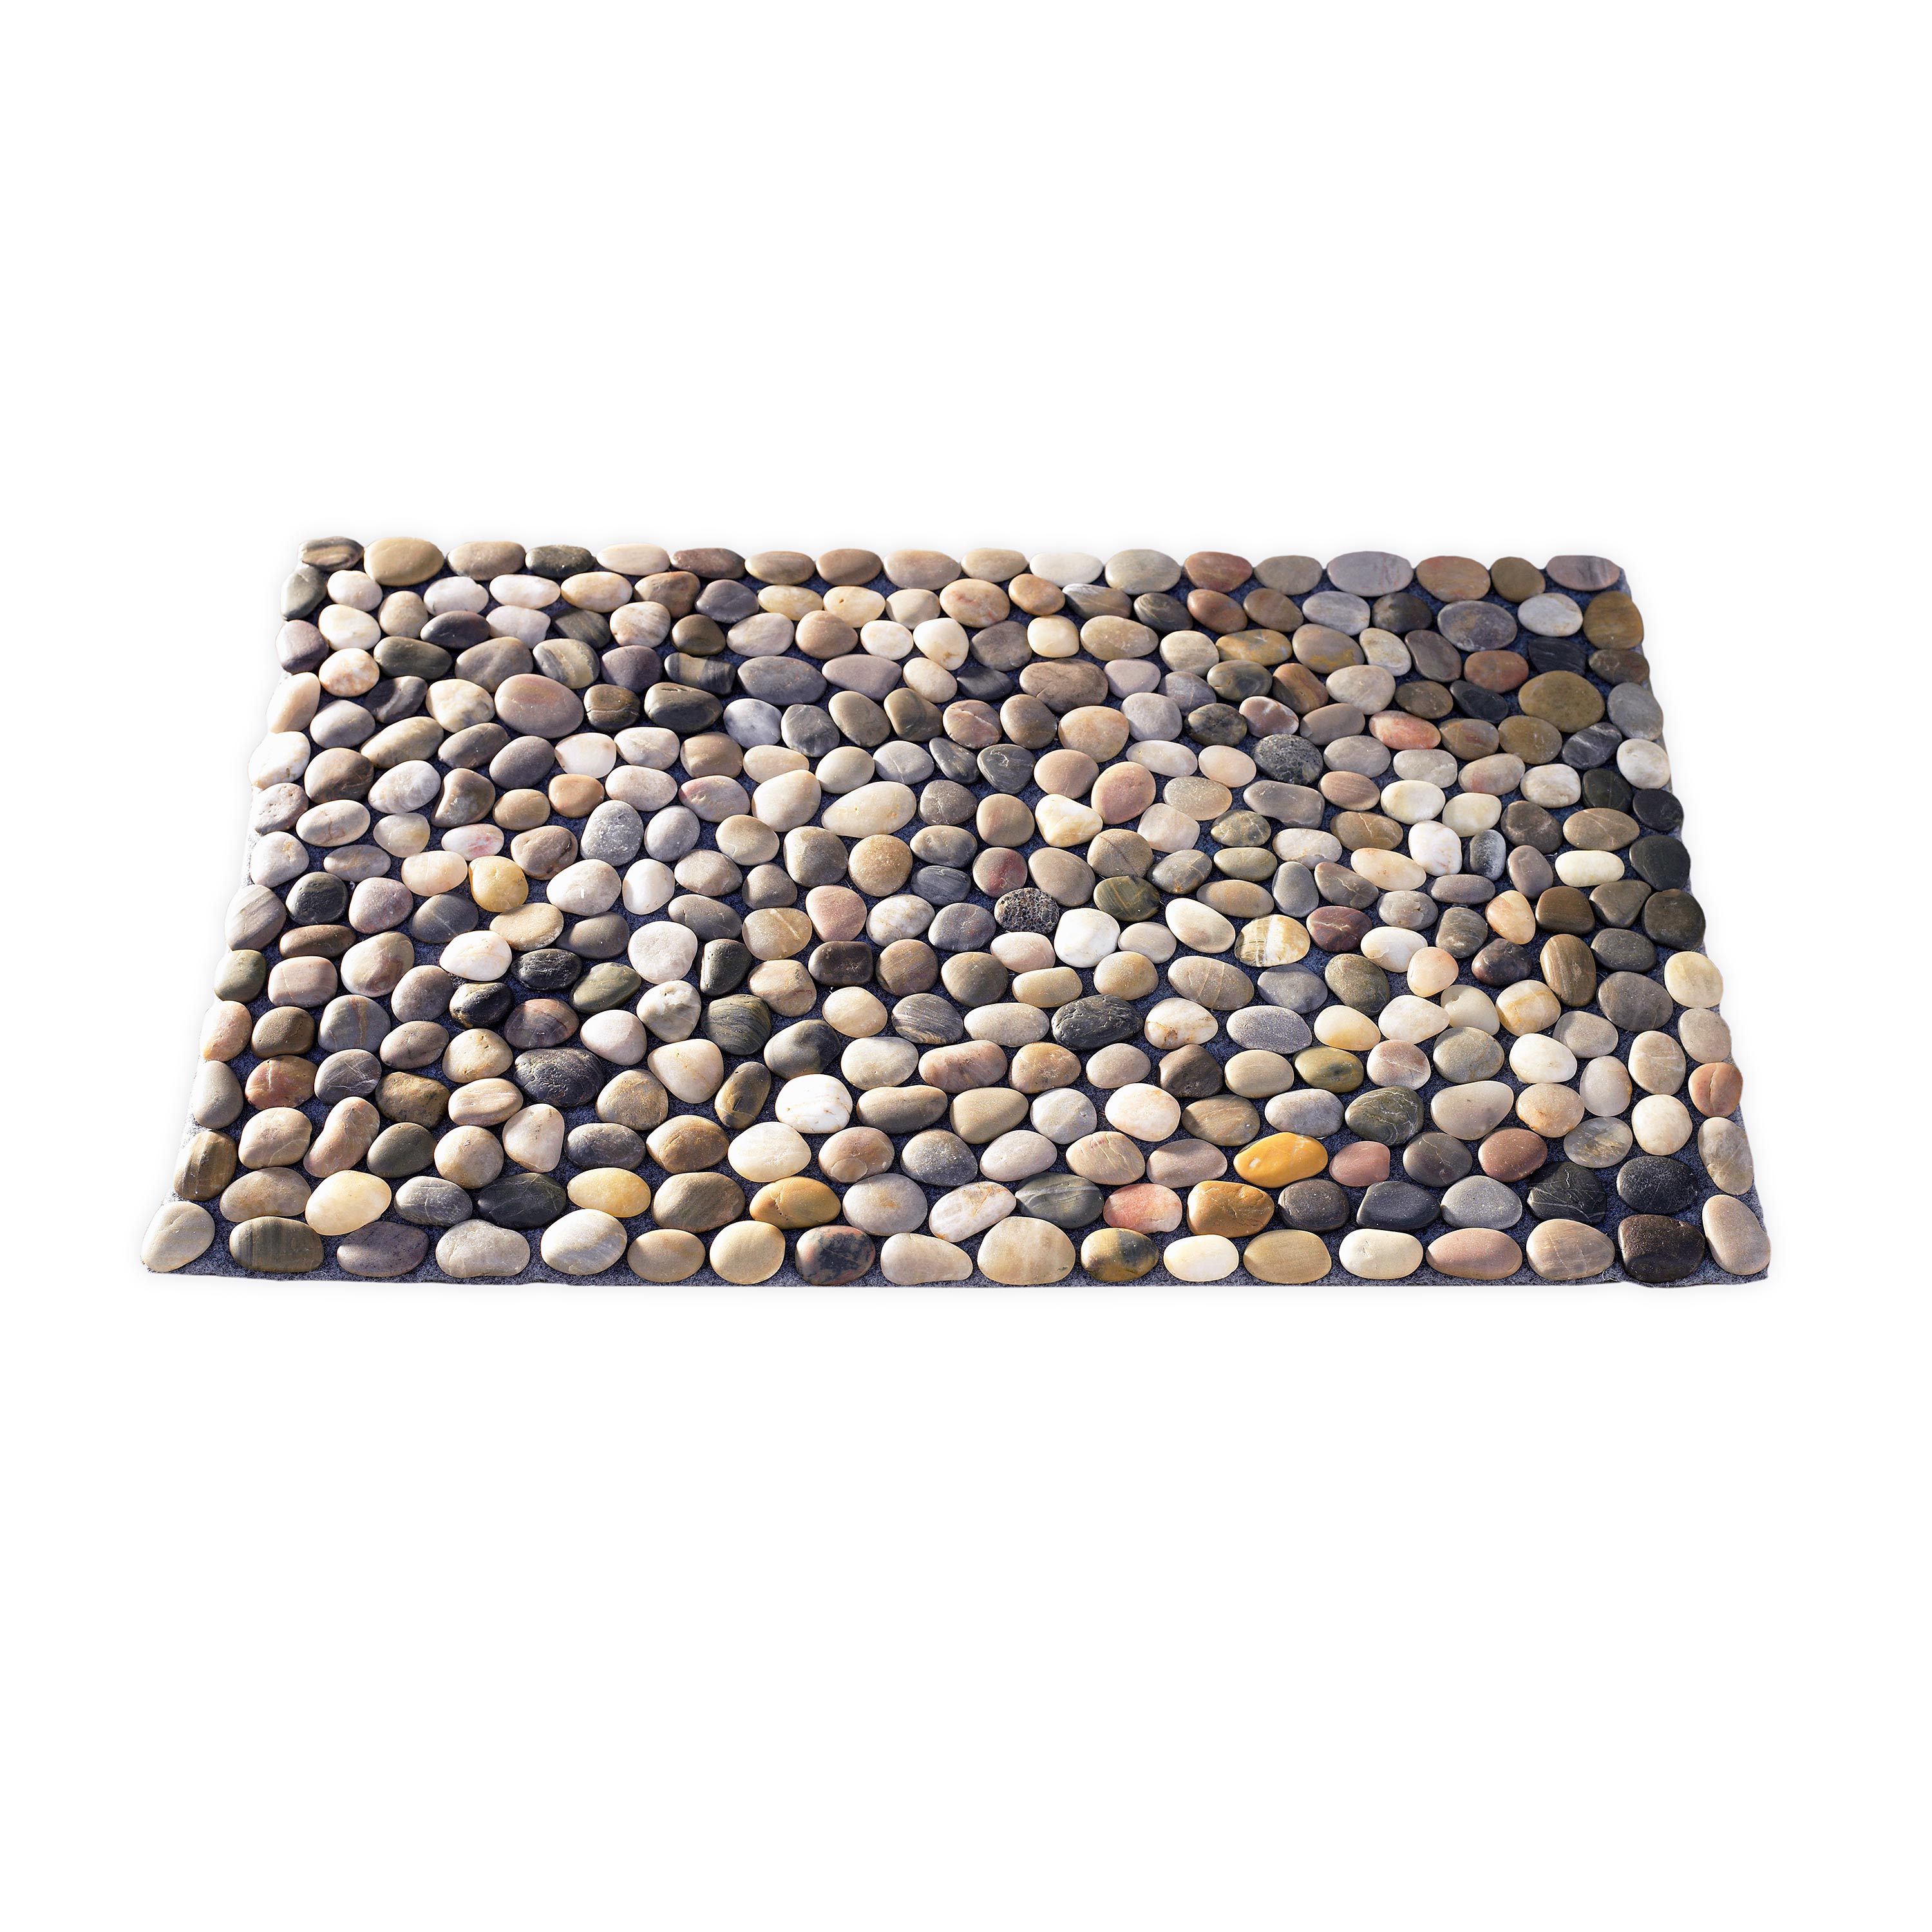 Smooth River Rock Stone Floor Mat, Indoor/ Outdoor swatch image